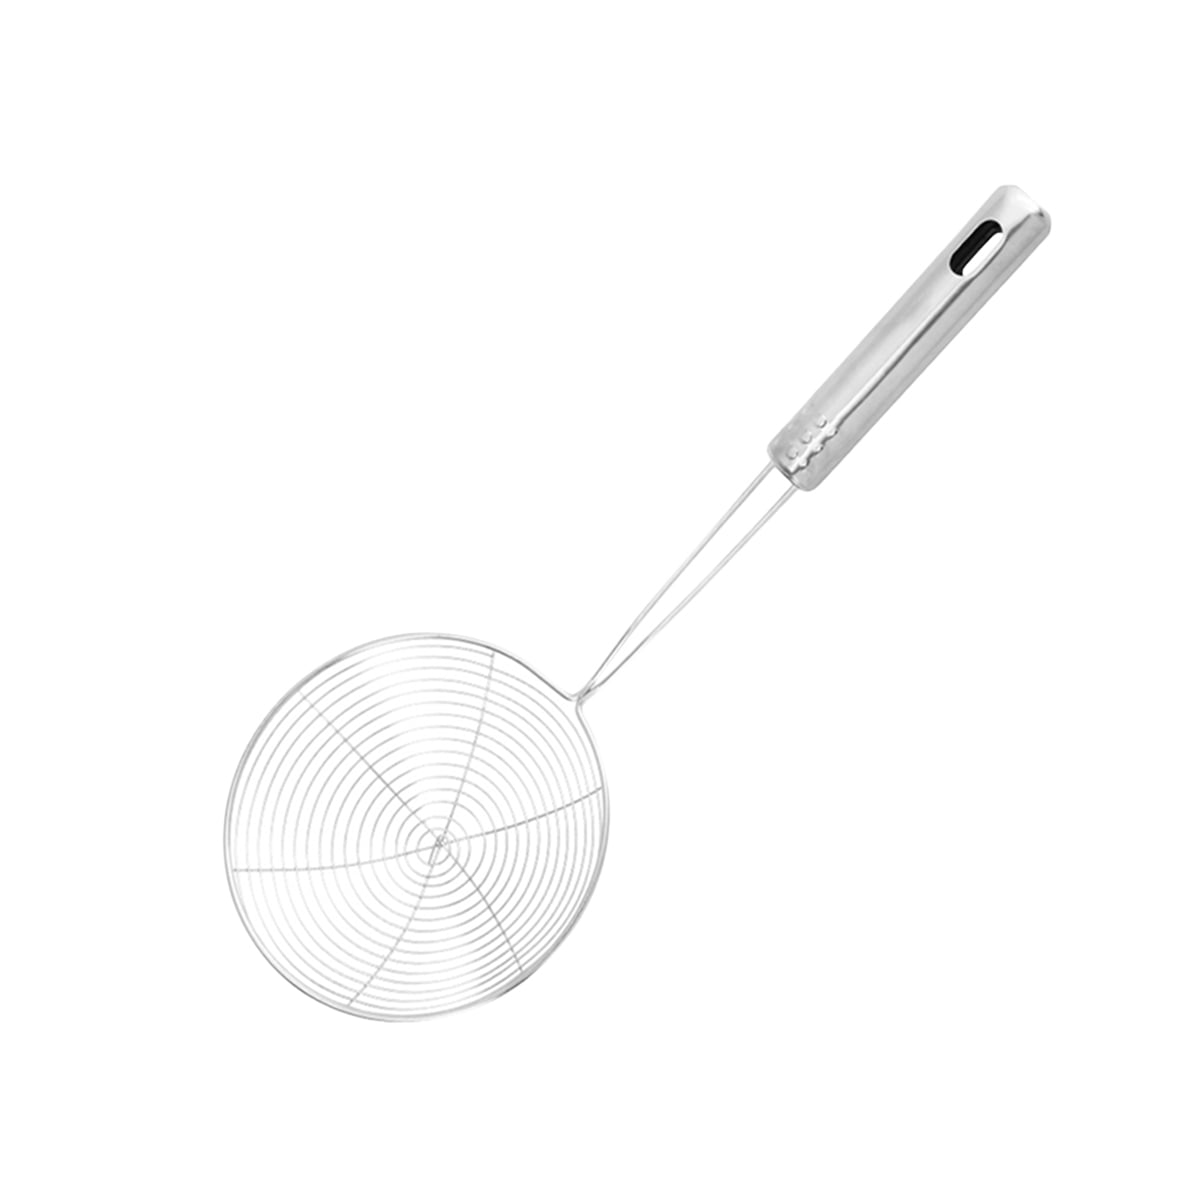 Wire Skimmer with Spiral Mesh SM SunniMix 2x Stainless Steel Skimmer Strainer Kitchen Skimmer Spoon/Ladle for Spaetzle/Pasta/Chips 20cm&14cm 